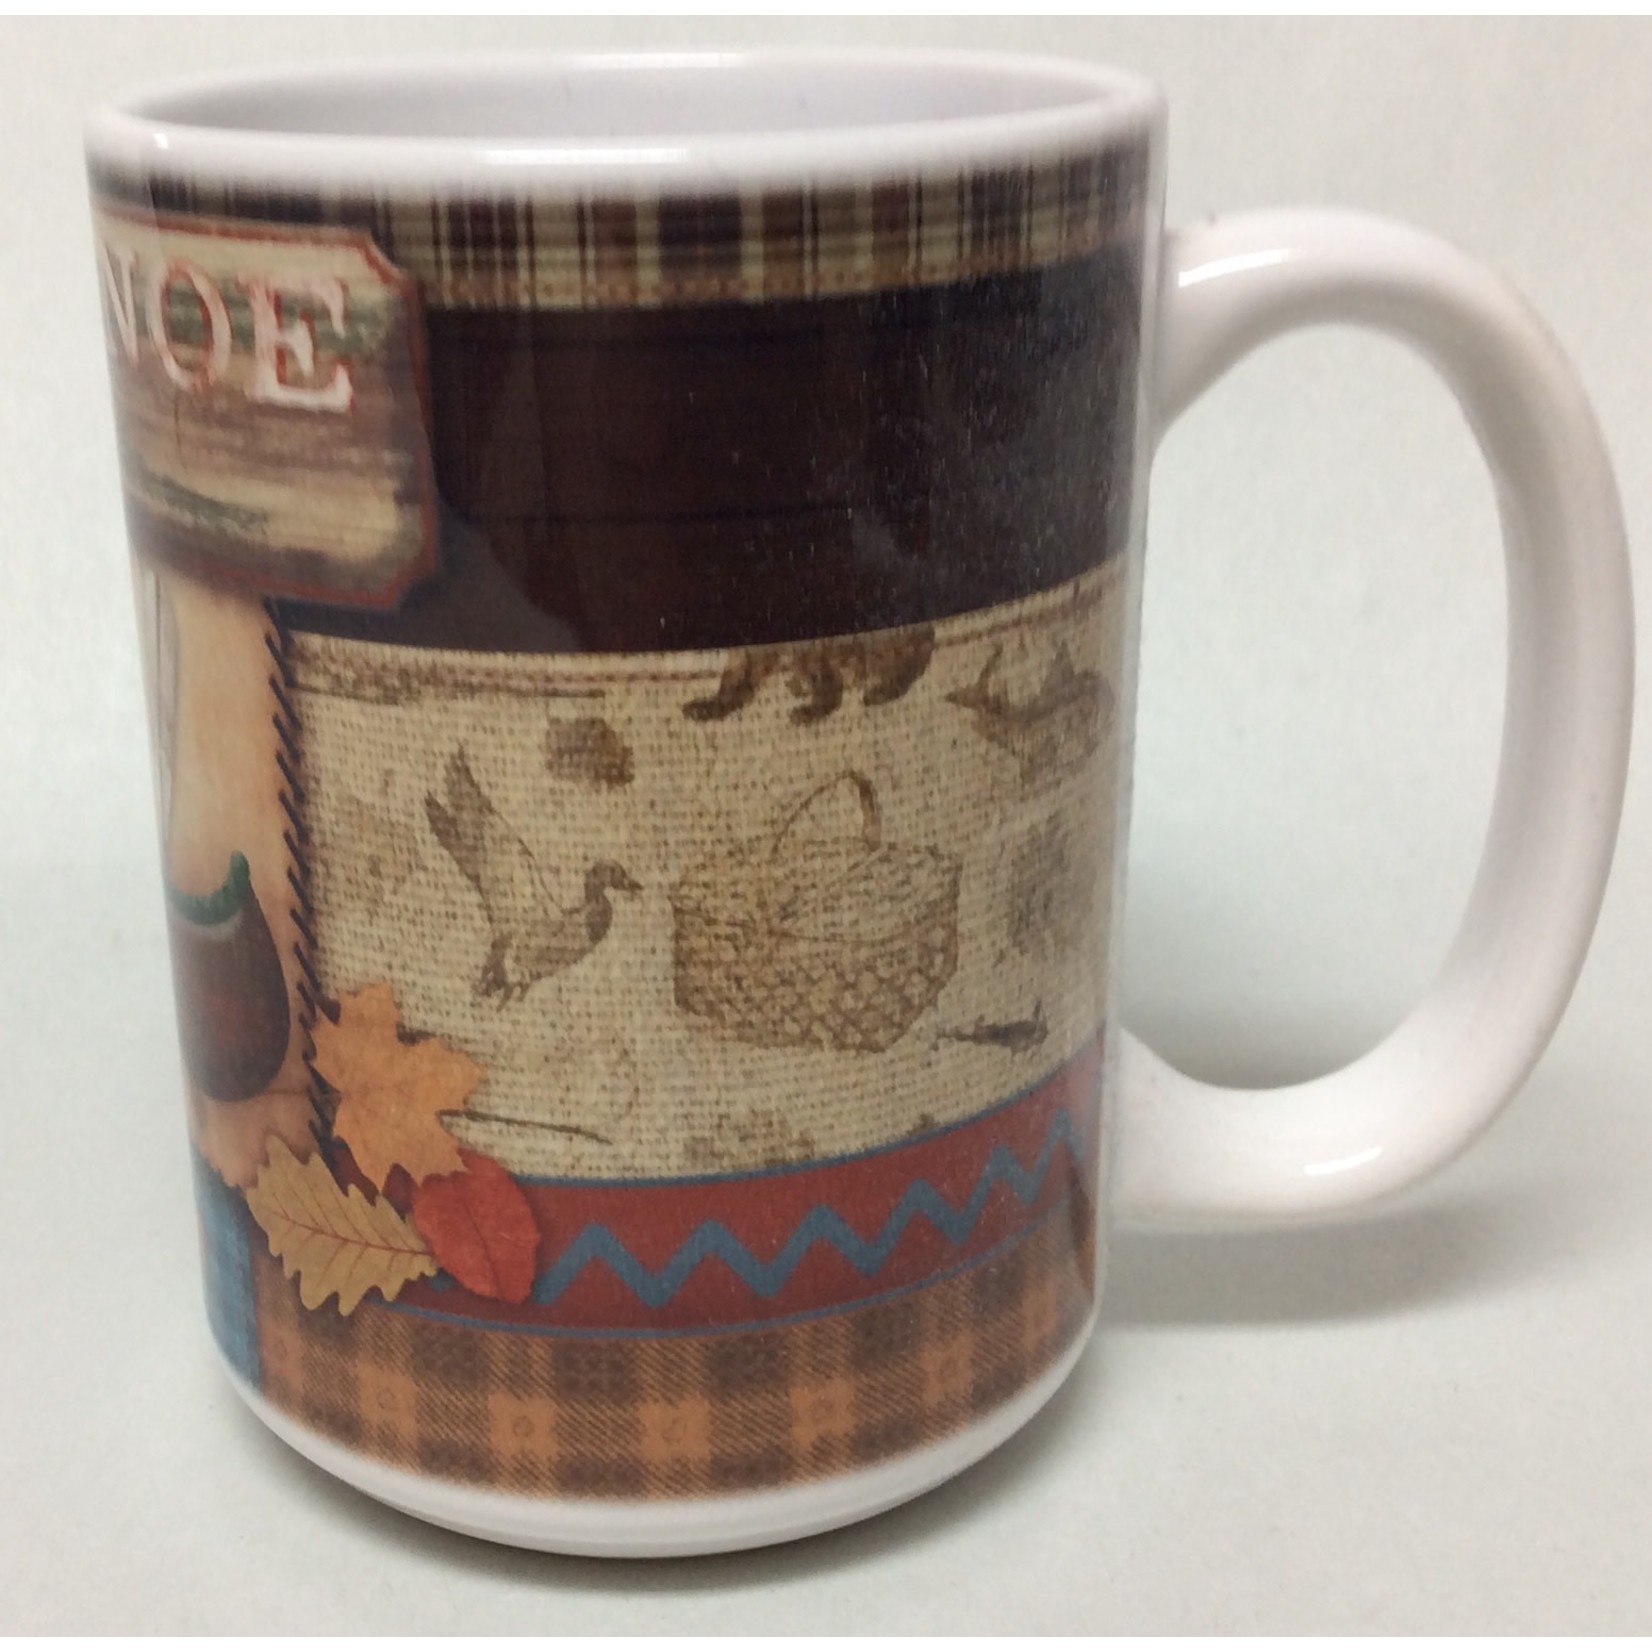 Bear Paw lodge mug